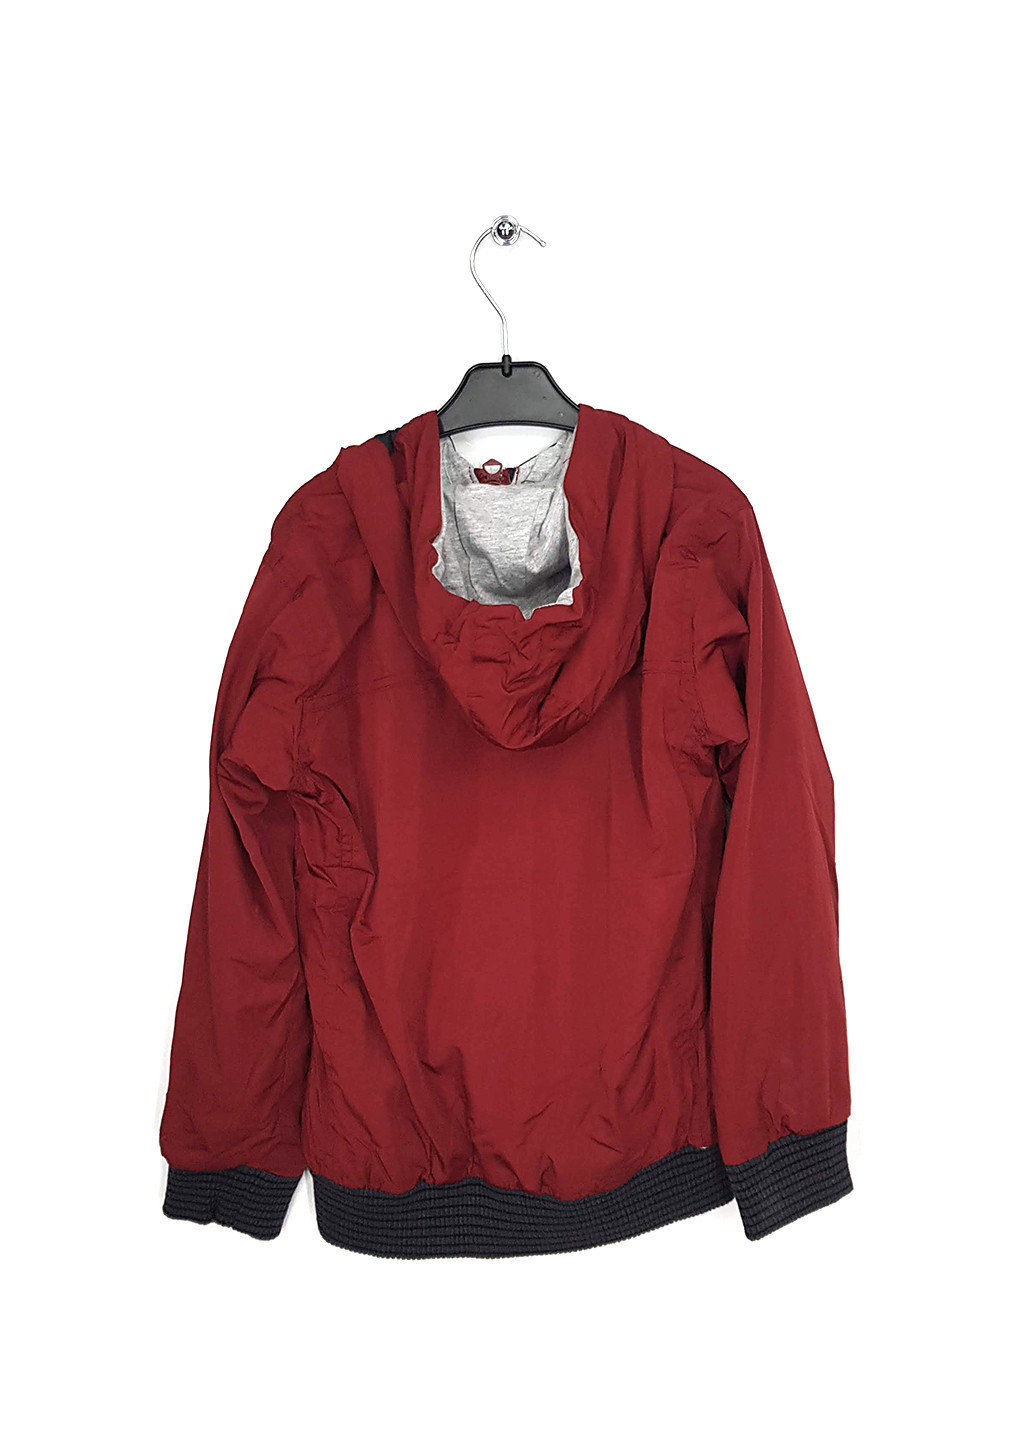 Красная демисезонная куртка Puledro